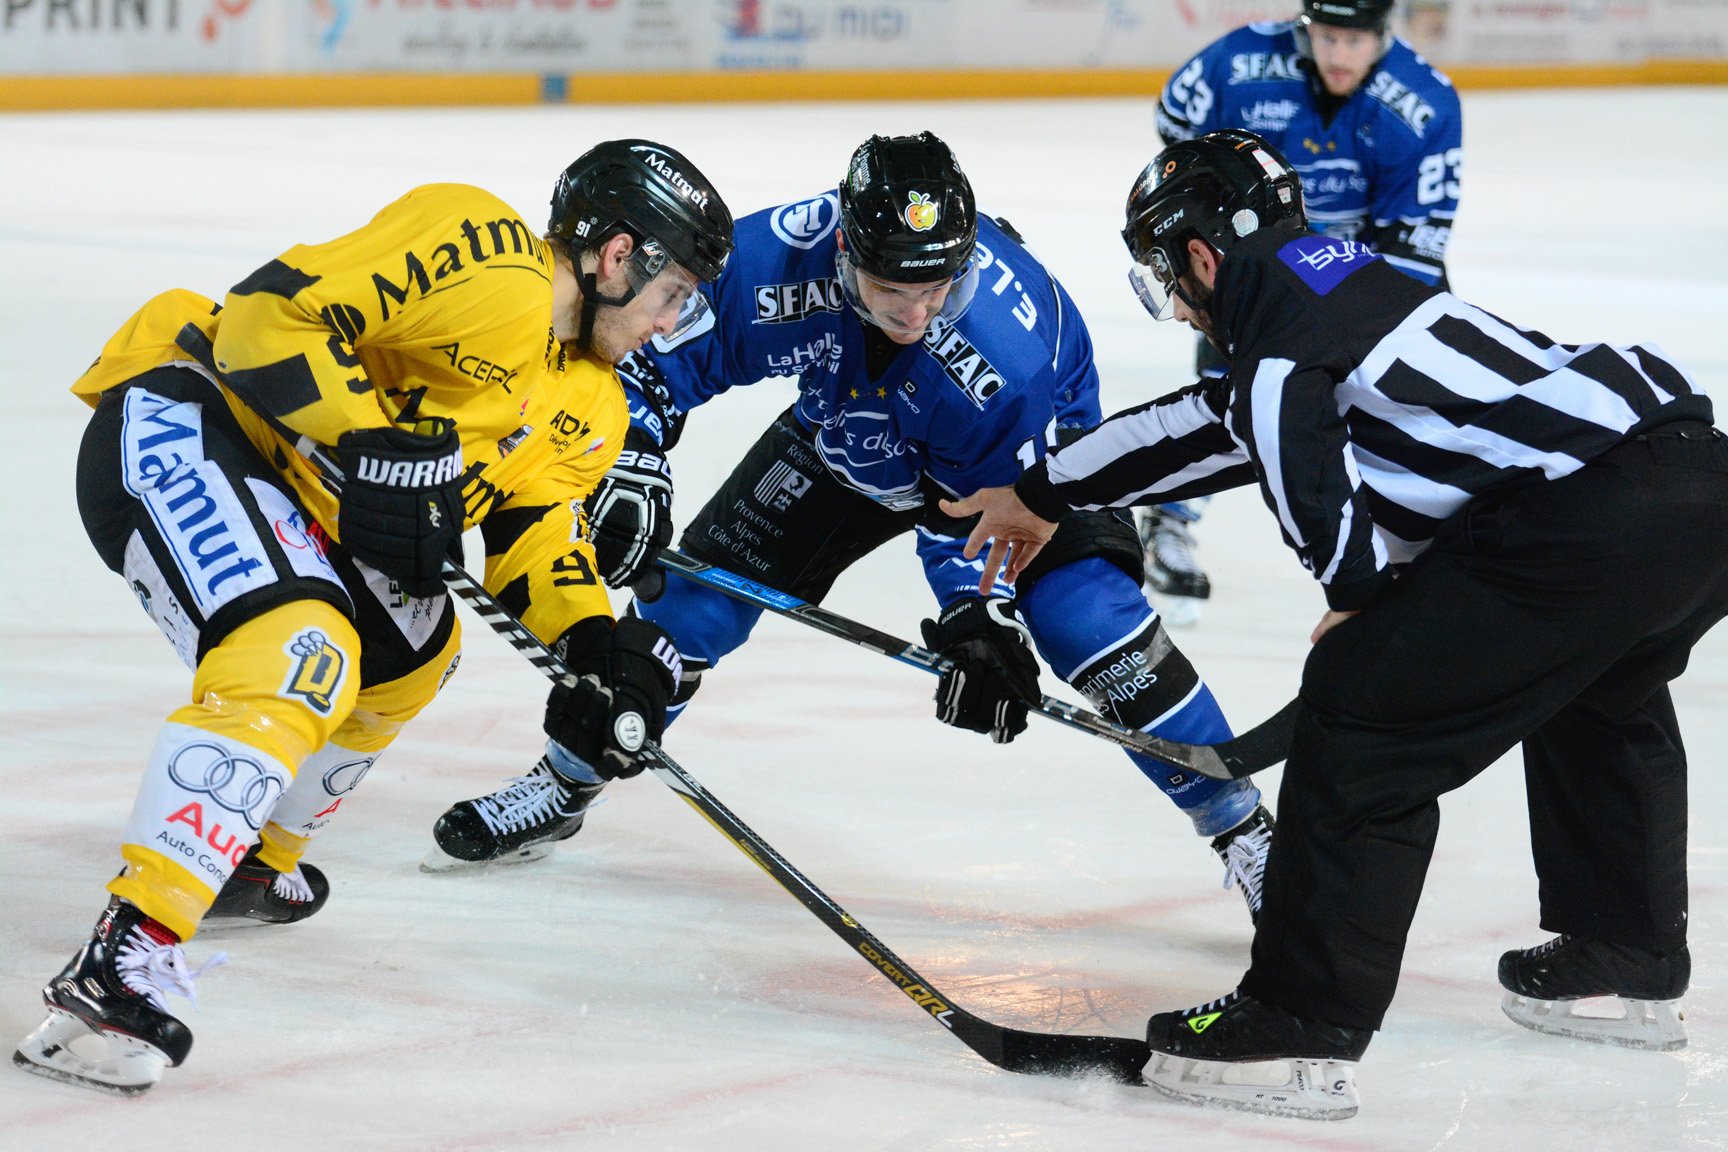 Match de hockey sur glace Gap-Lyon - le 12/01 à 20h30 à l'Alp'arena de Gap